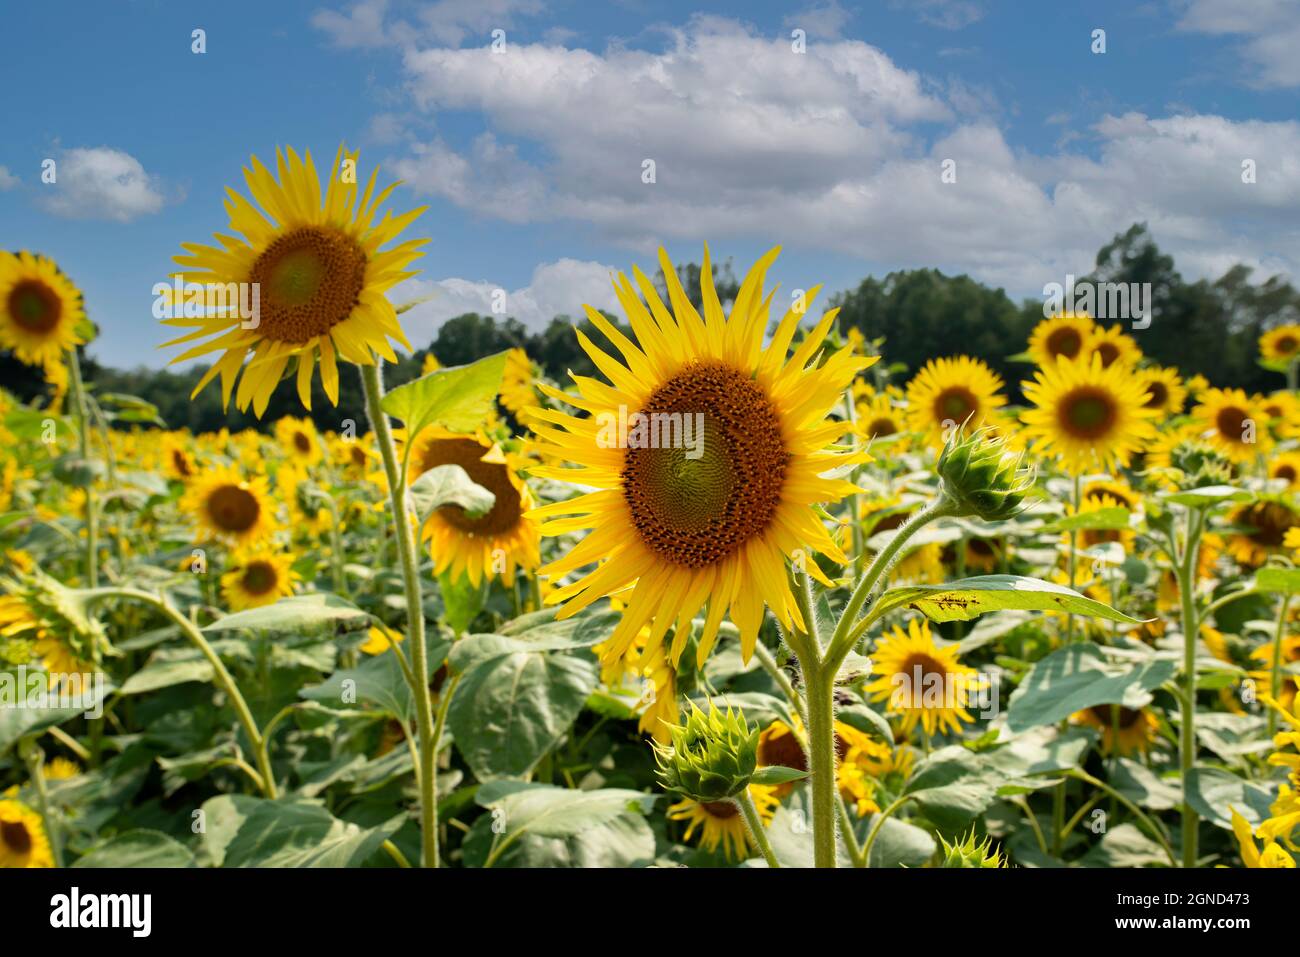 sunflowers 1 Stock Photo